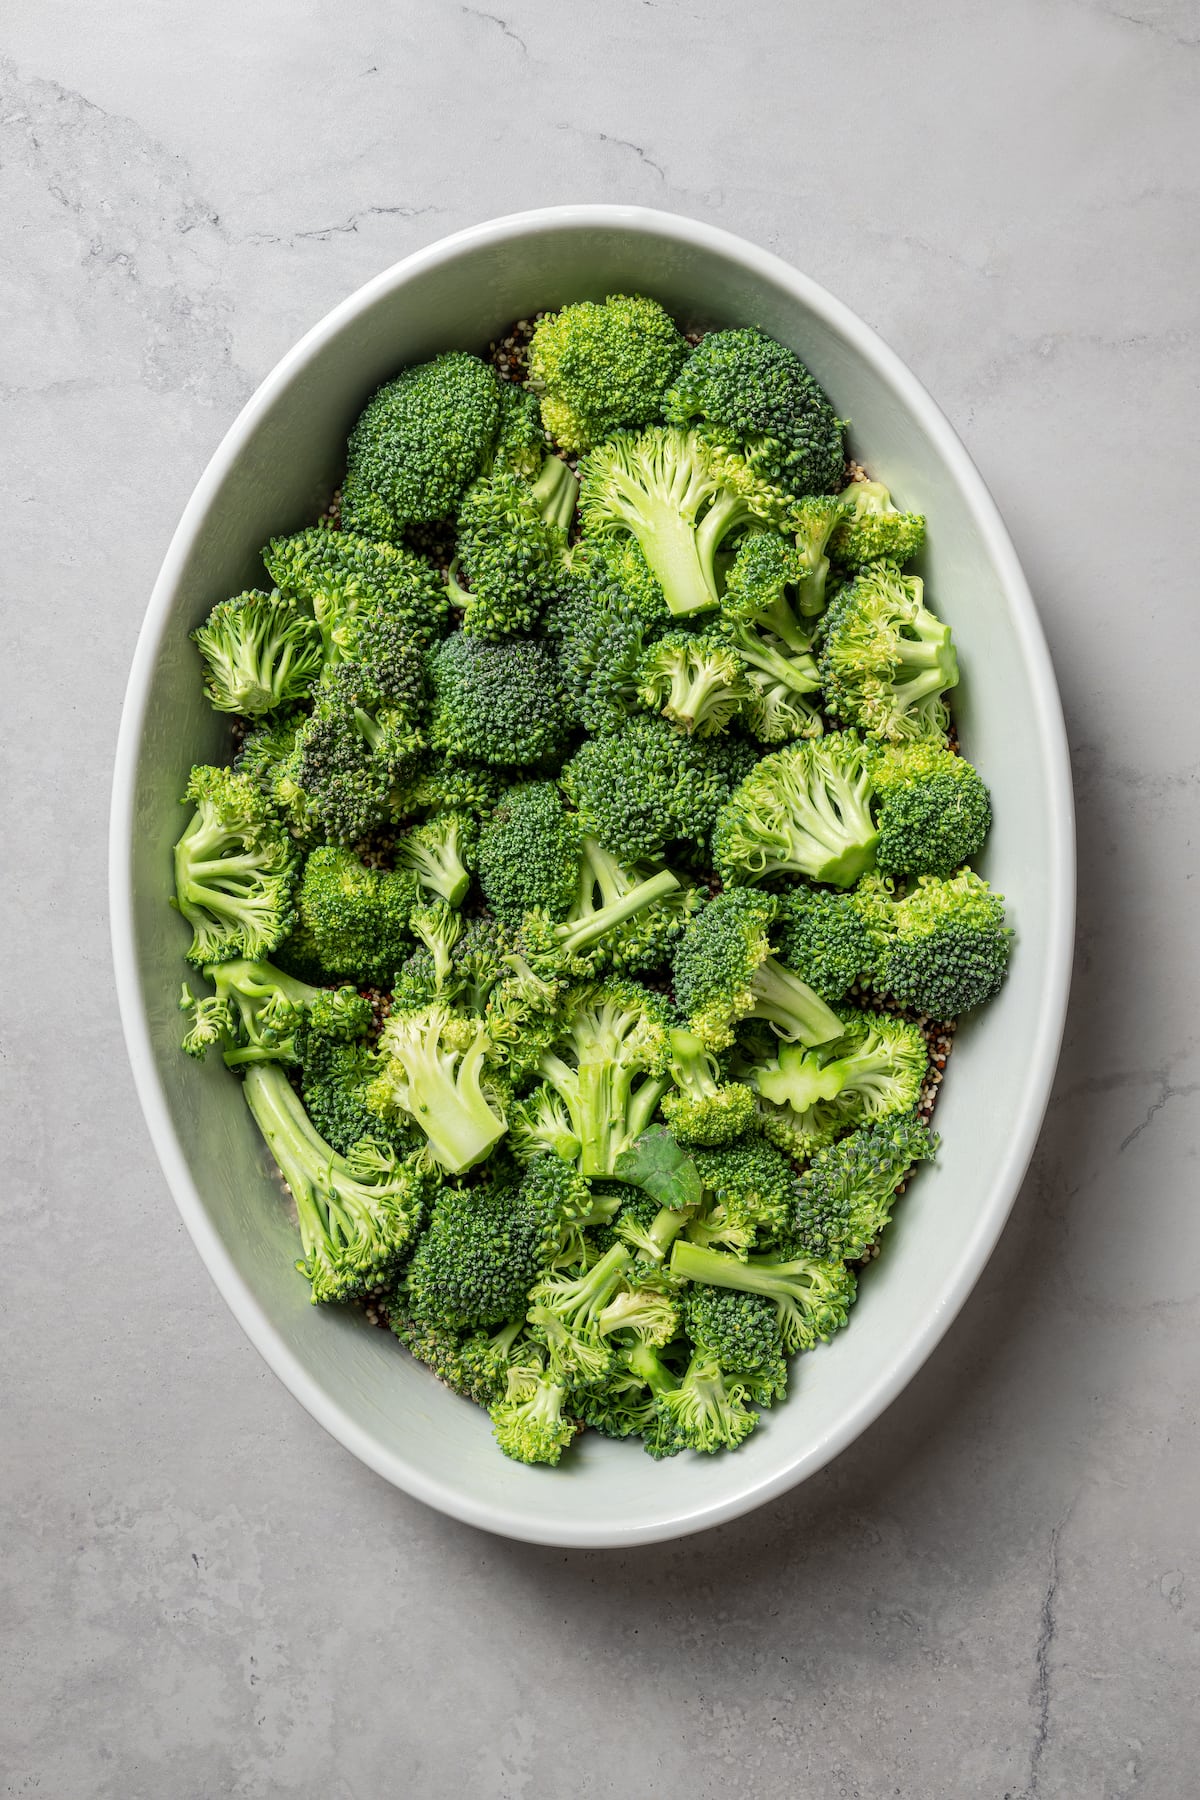 Adding broccoli to a layer of quinoa in a casserole dish.